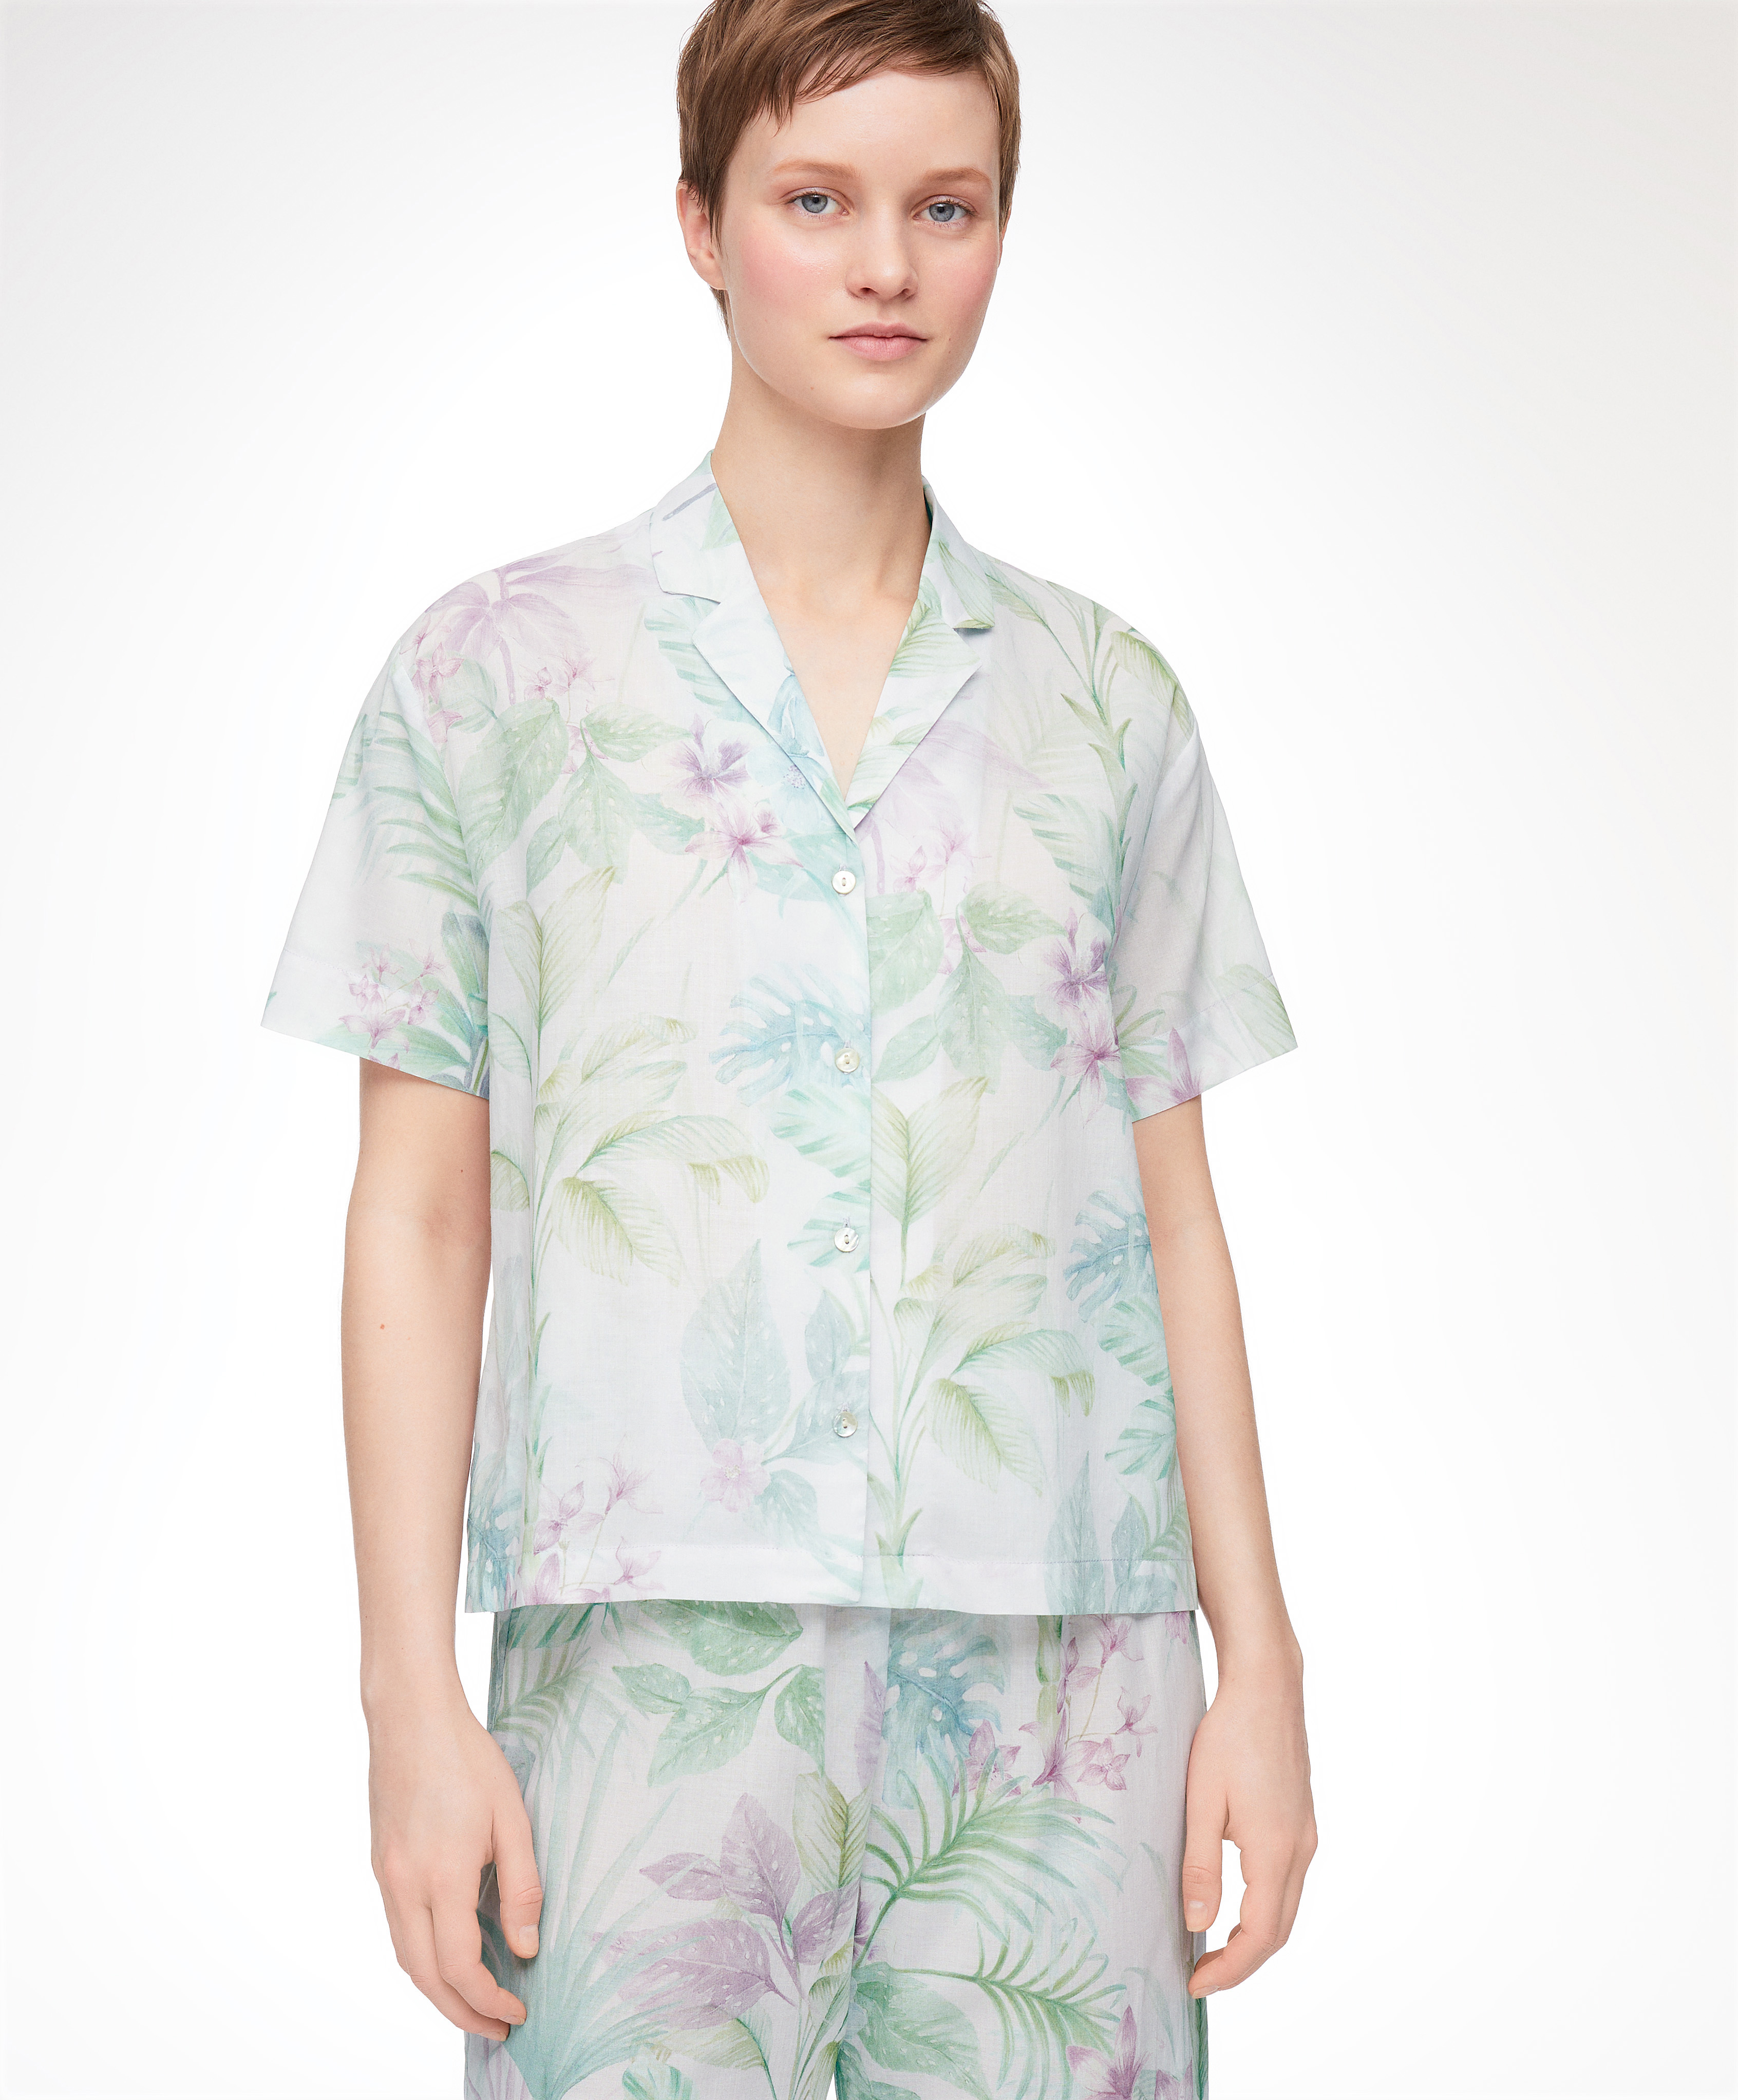 Camicia del pigiama a manica corta 100% cotone tropicale